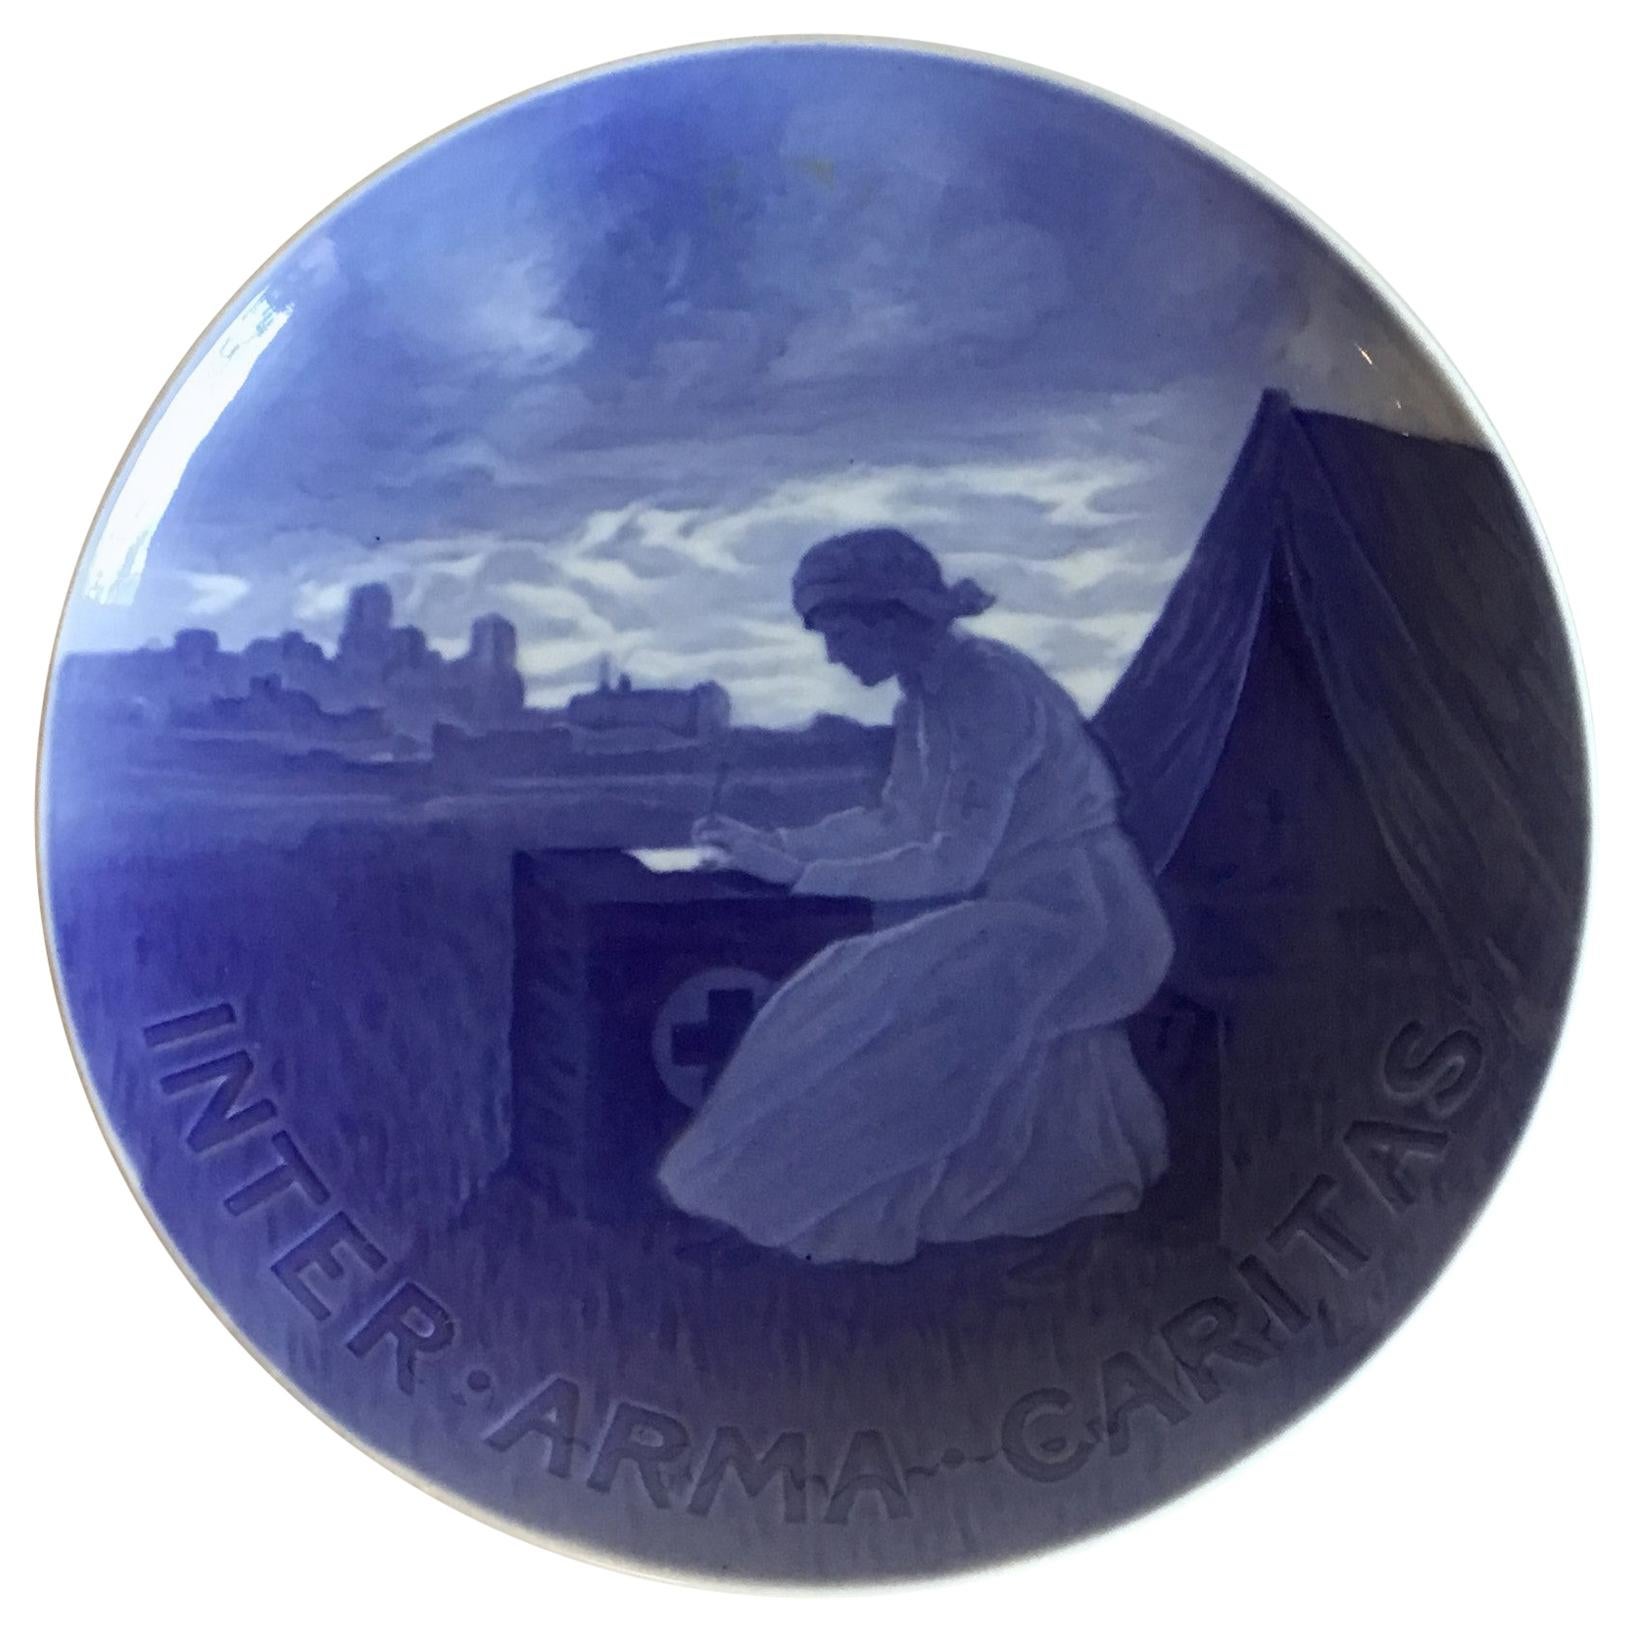 Bing & Grondahl Commemorative Plate from 1916 BG-CM47 For Sale